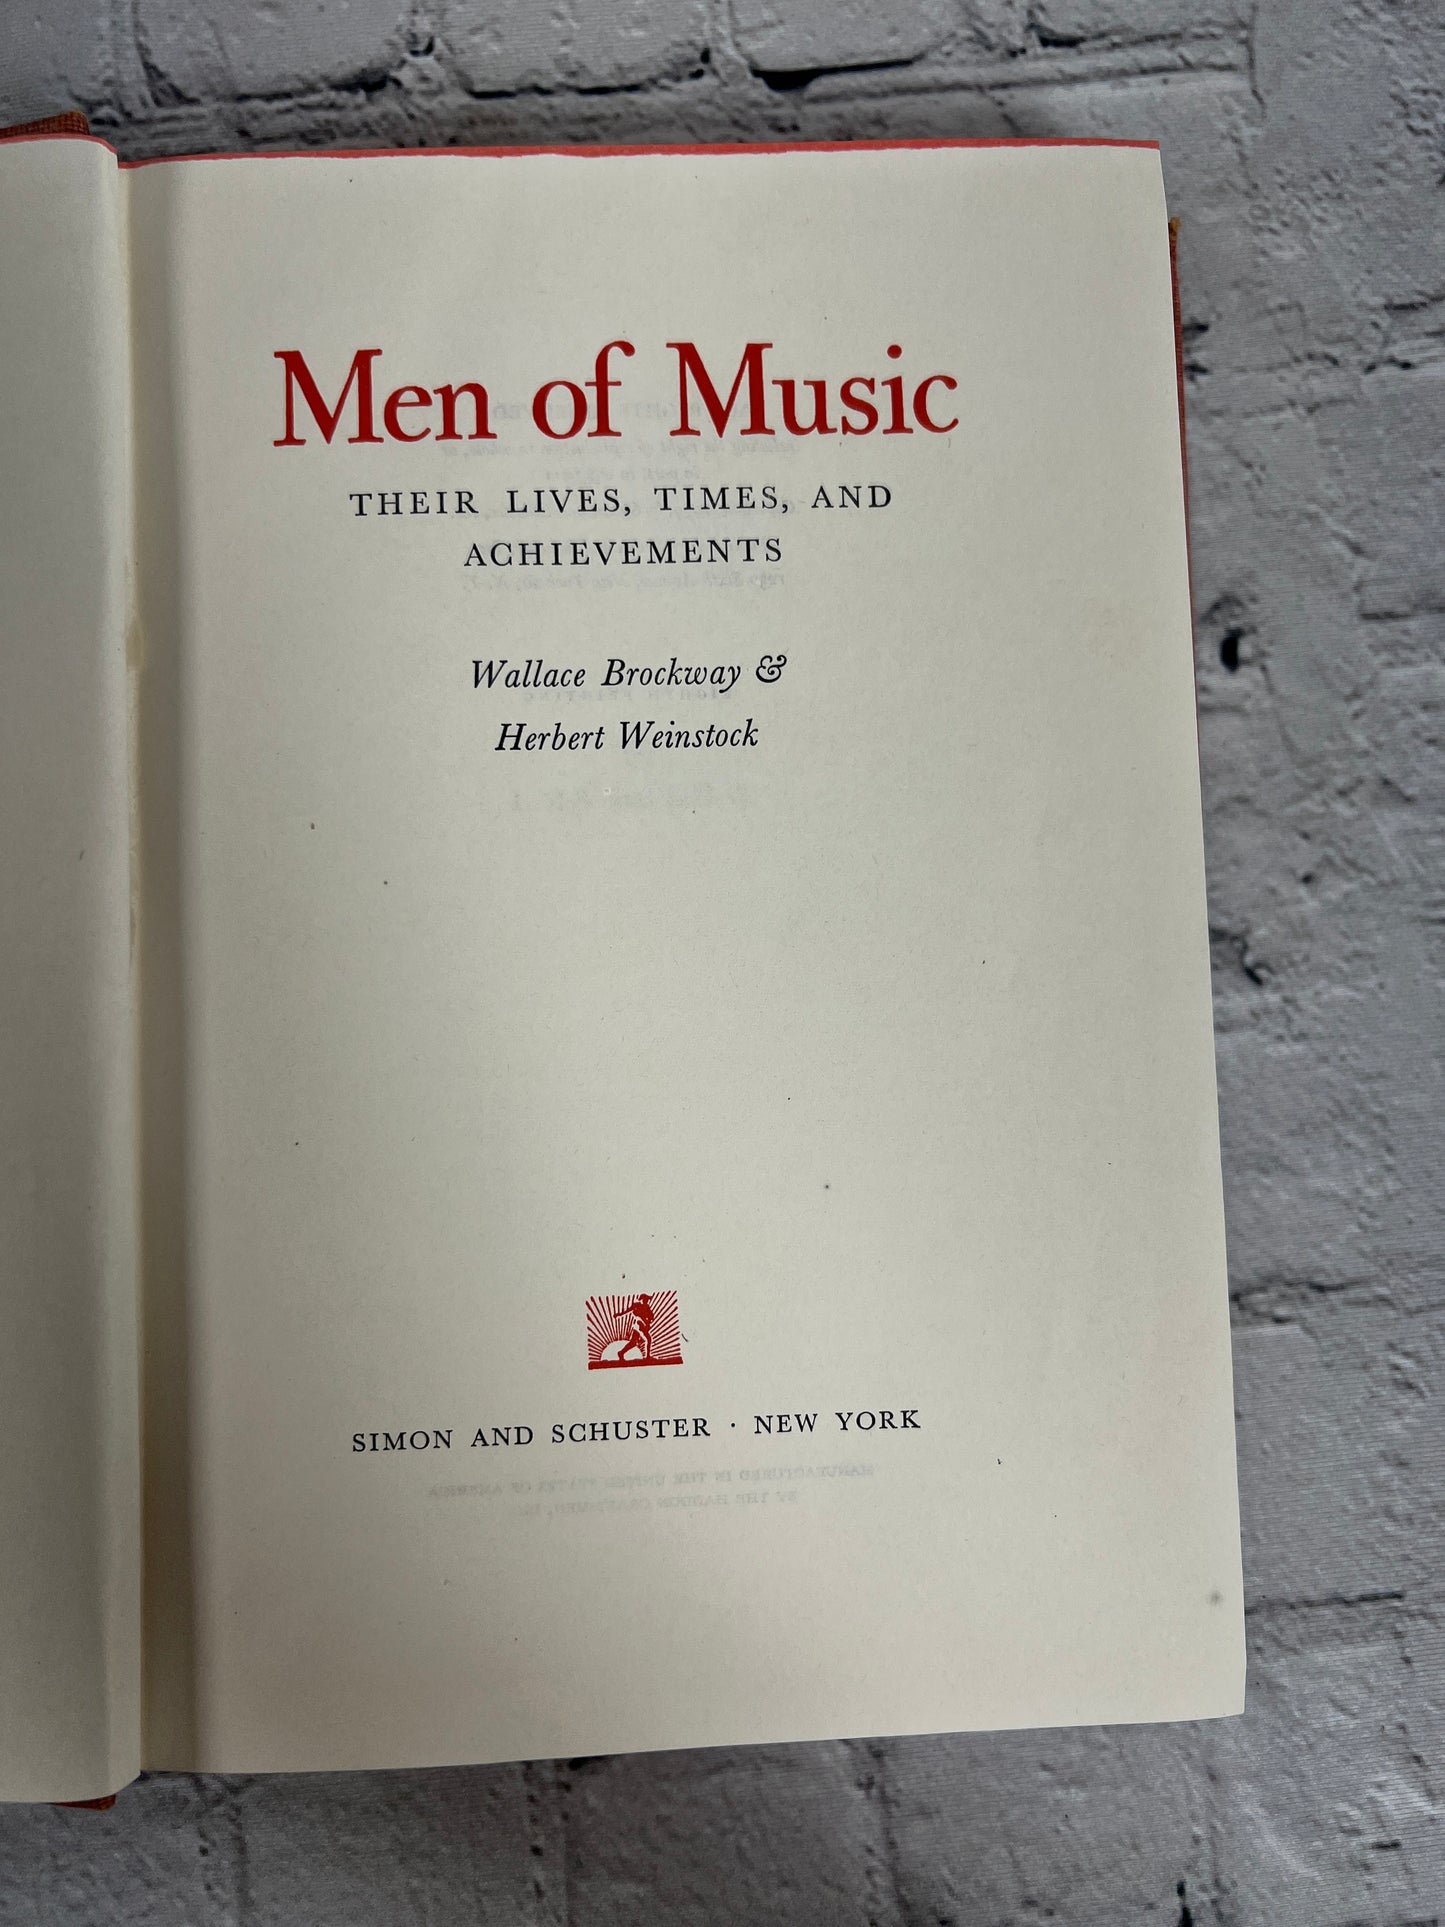 Men of Music by Wallace Brockway and Herbert Weinstock [1939]